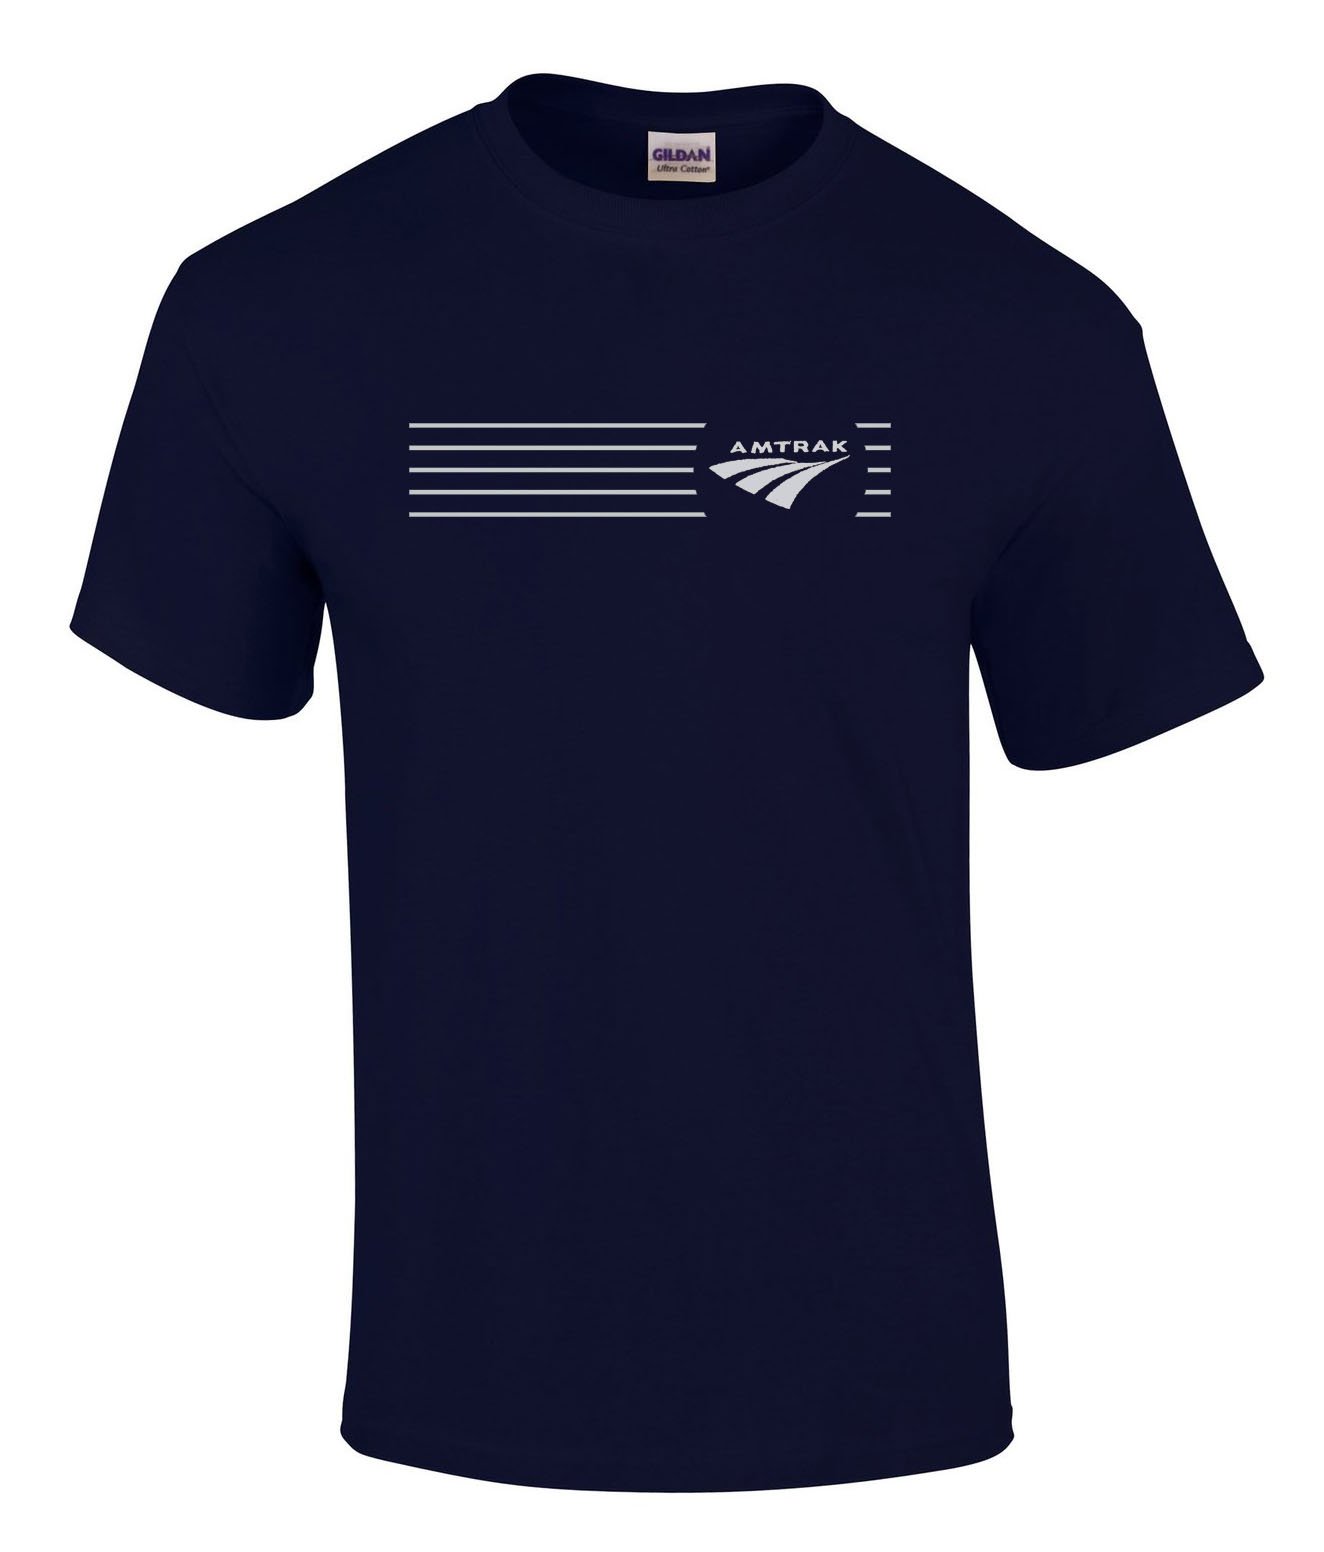 Daylight Sales Amtrak Travelmark Railroad Logo Tee Shirts [tee252]